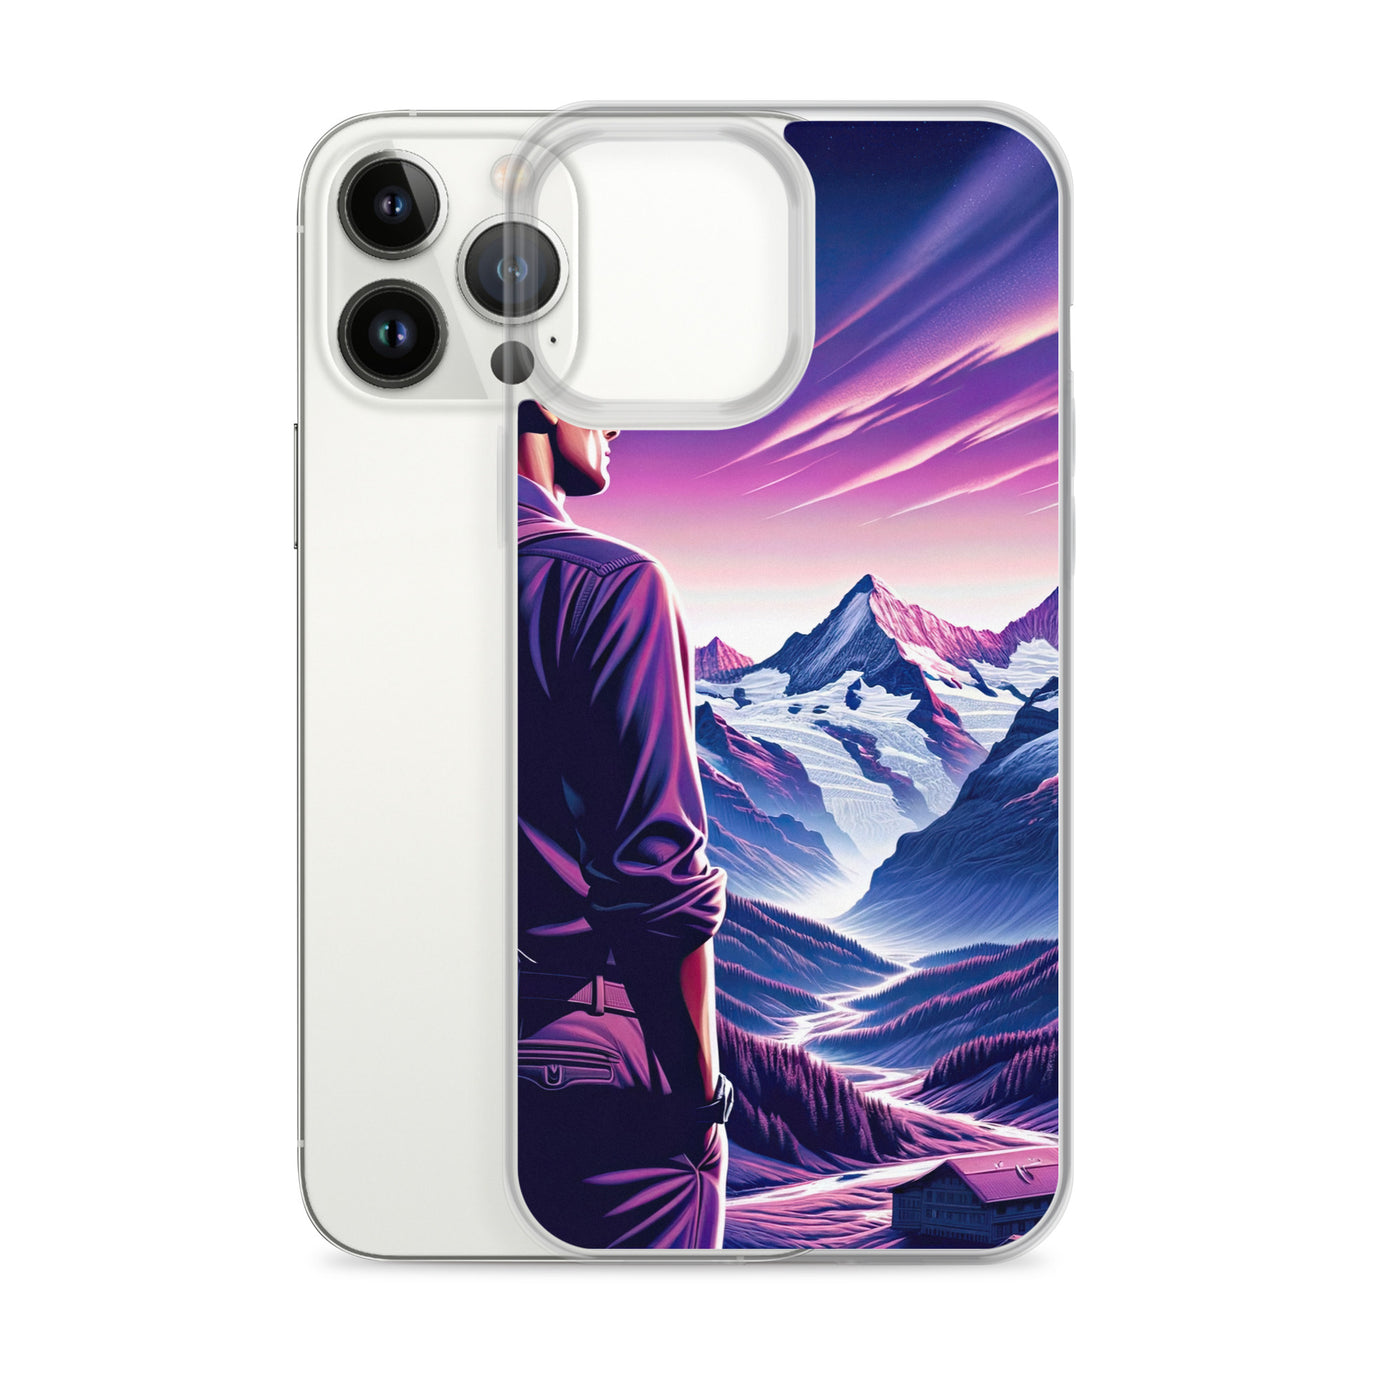 Wanderer in alpiner Dämmerung, schneebedeckte Gipfel ins Unendliche - iPhone Schutzhülle (durchsichtig) wandern xxx yyy zzz